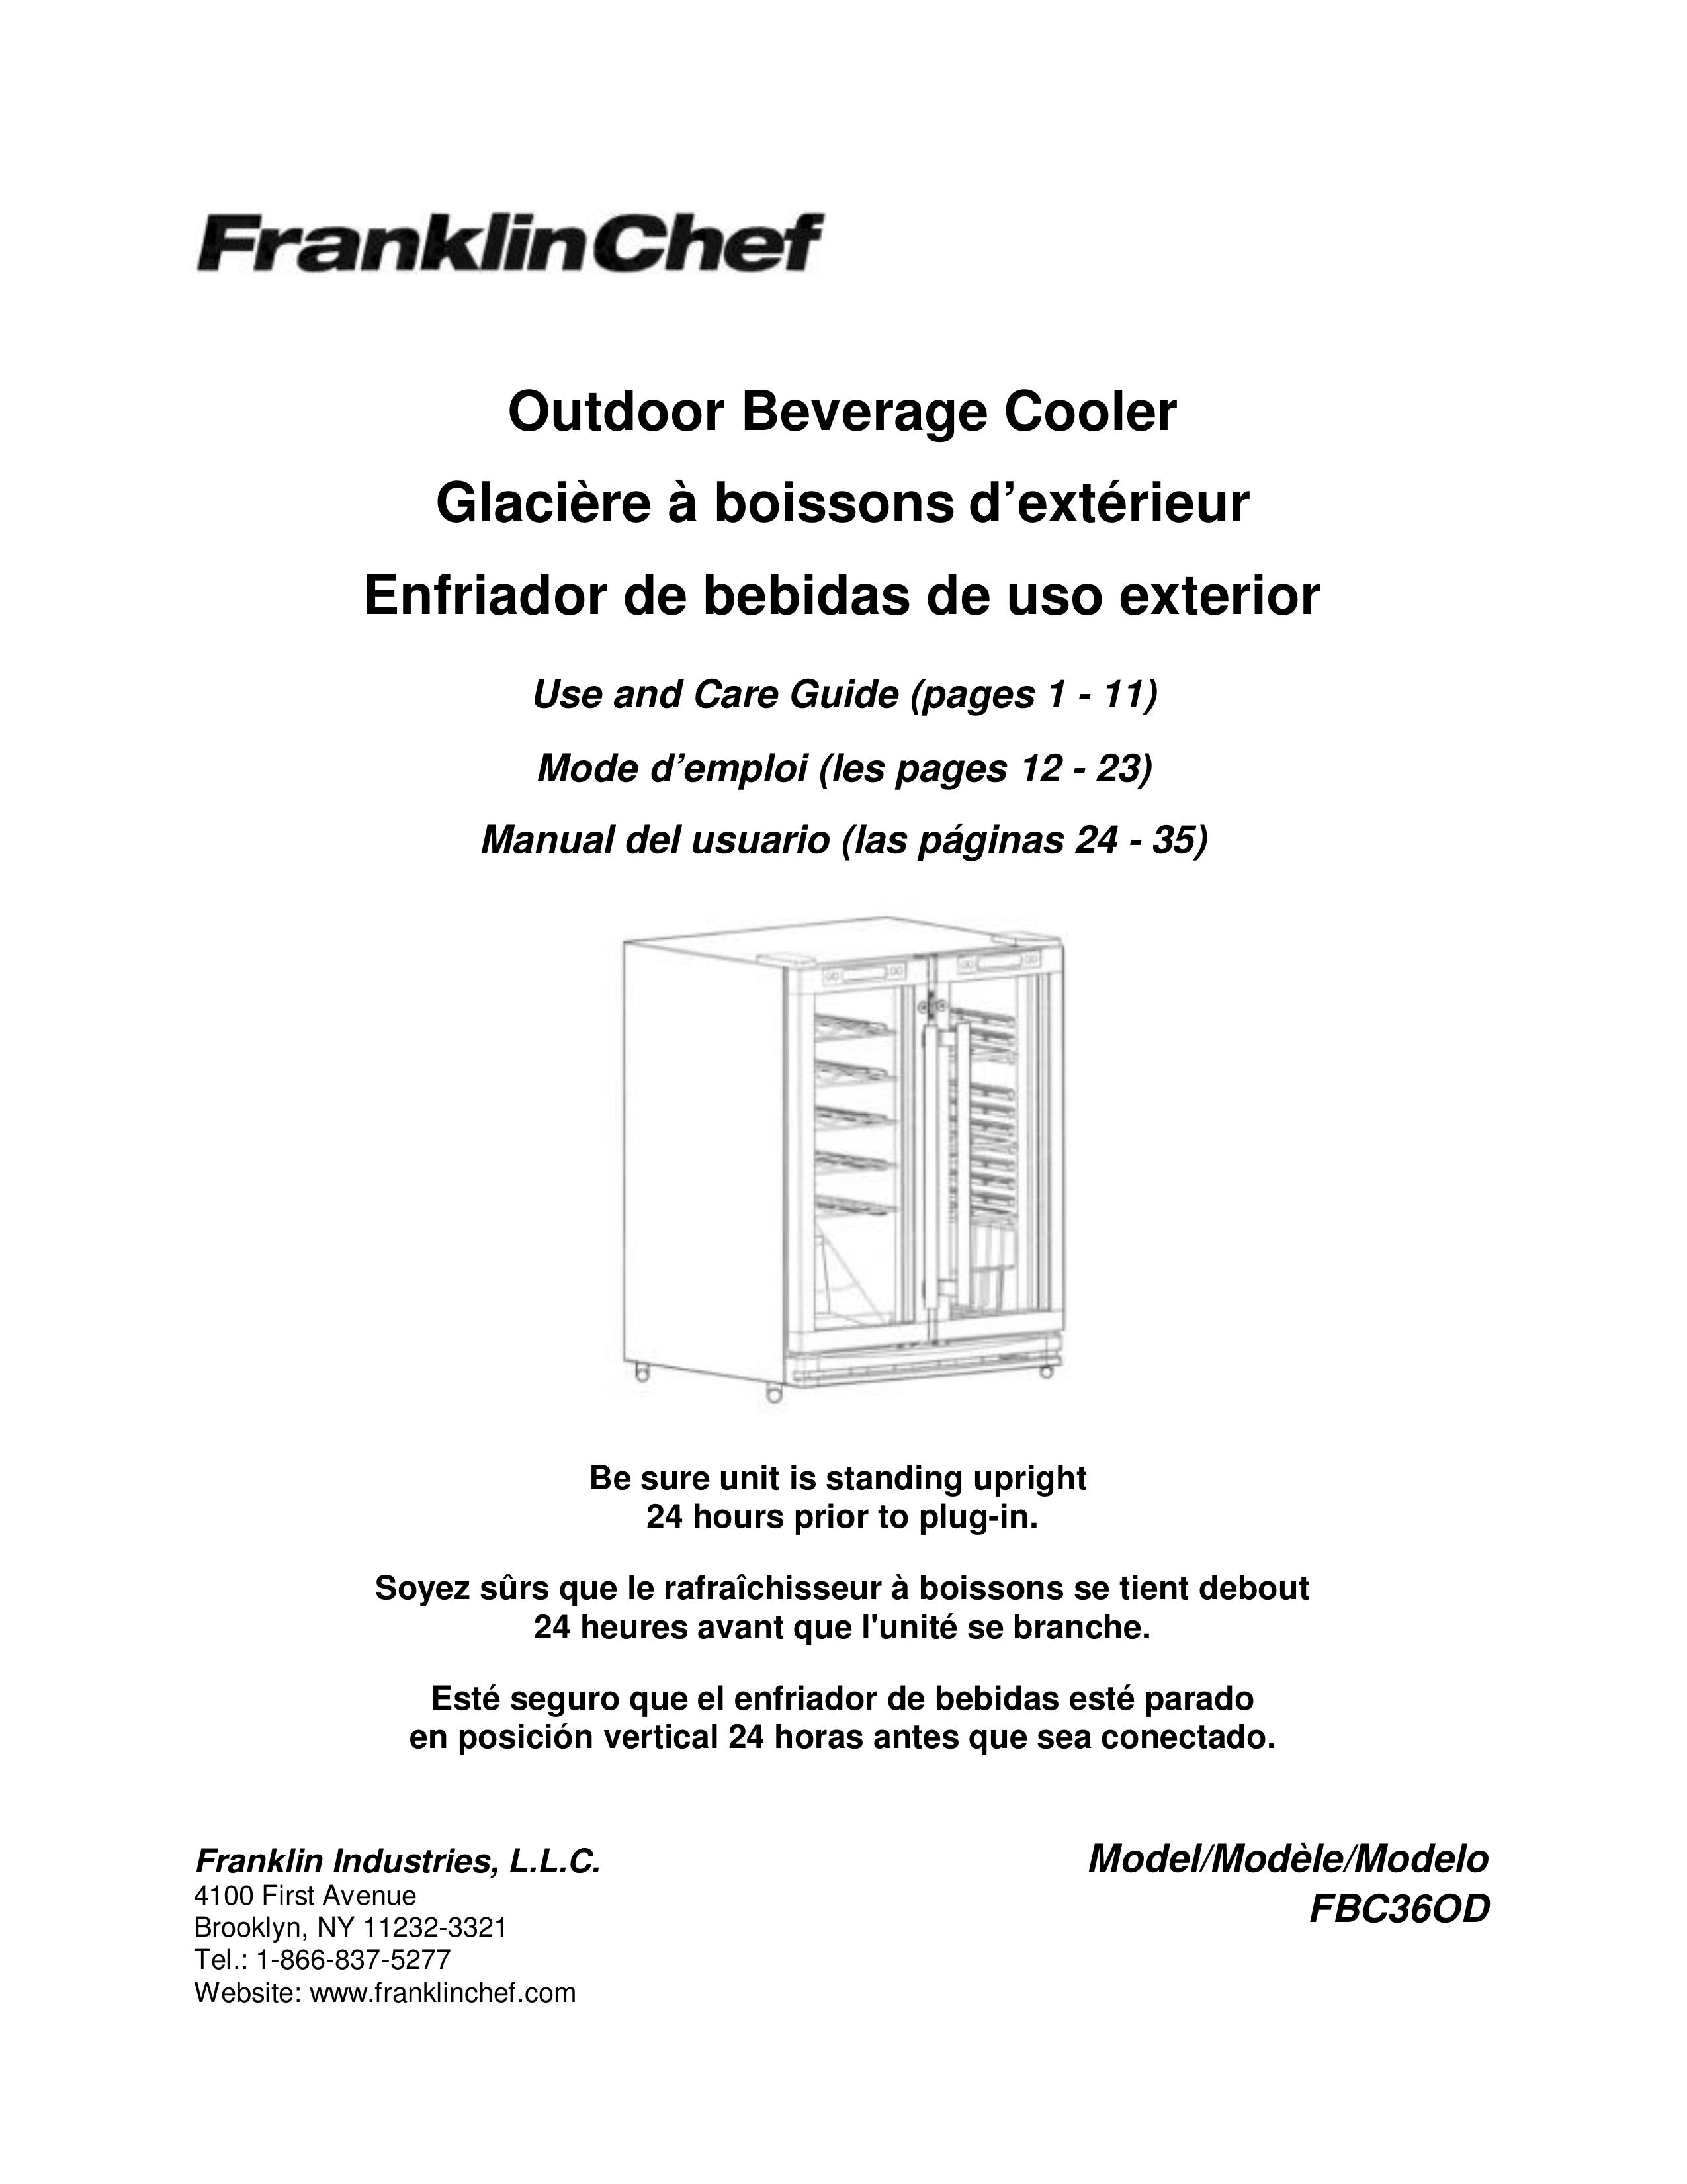 Franklin Industries, L.L.C. FBC36OD Refrigerator User Manual